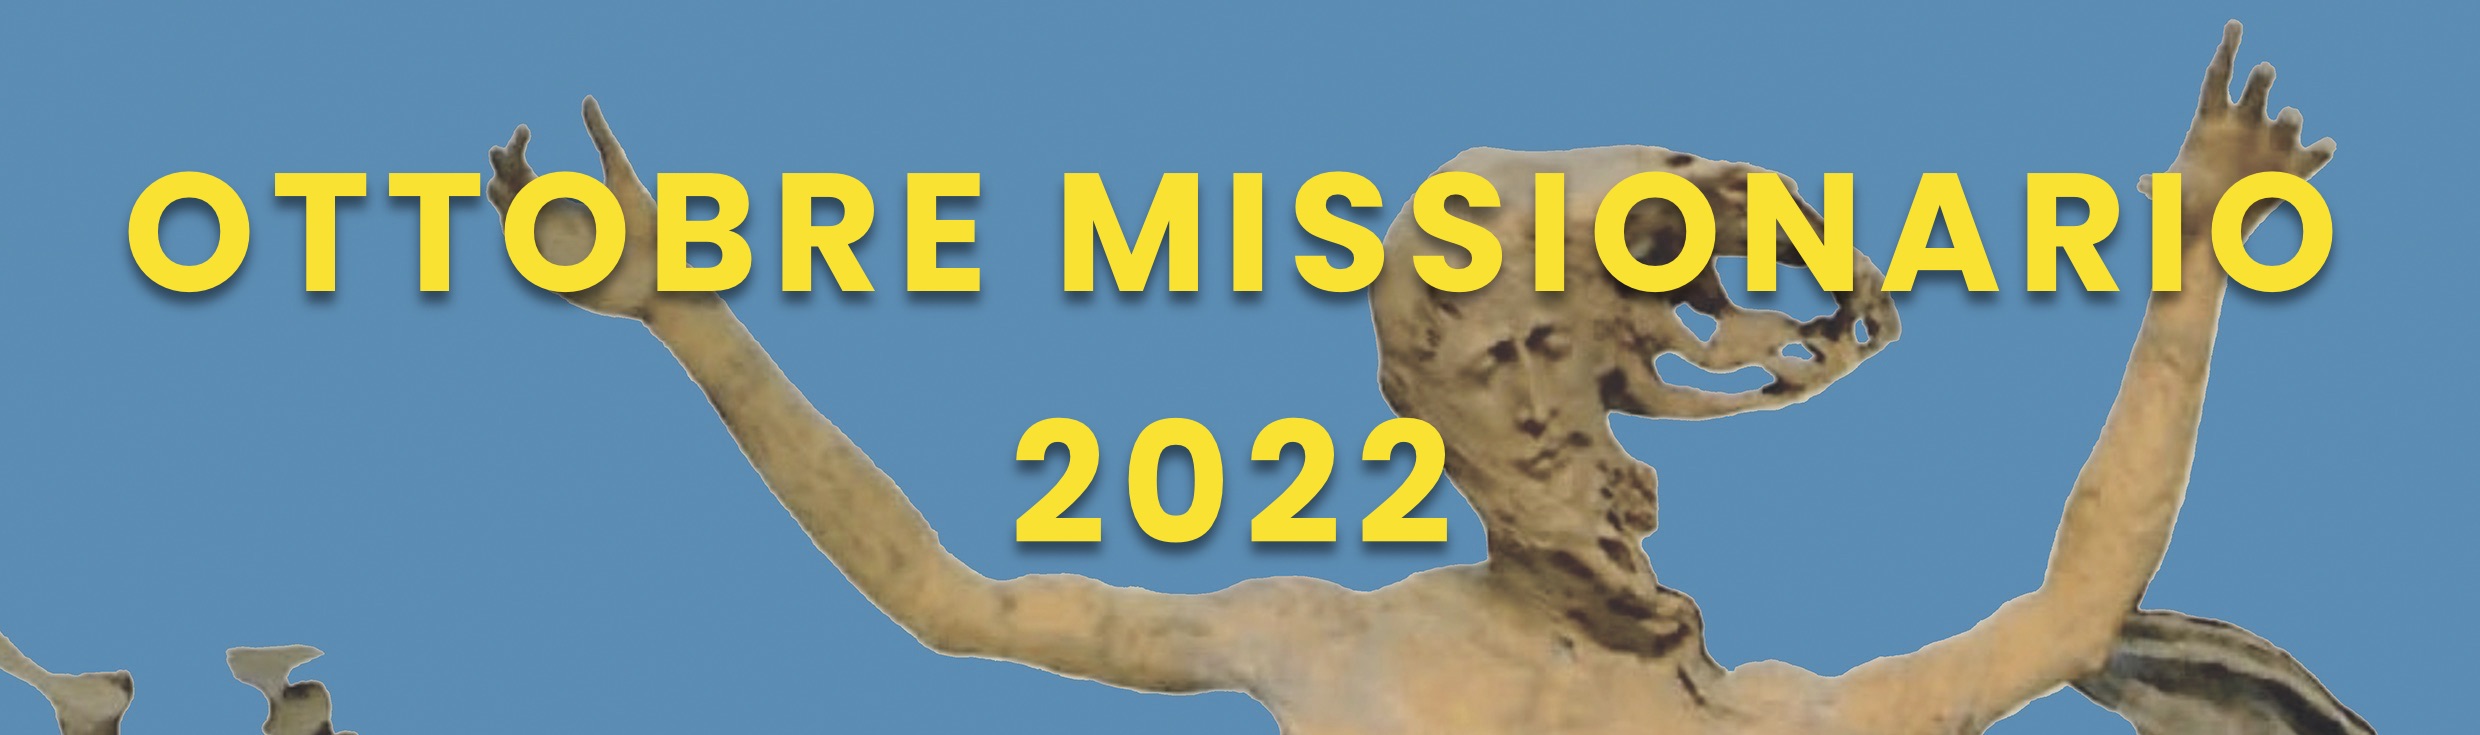 Ottobre Missionario 2022